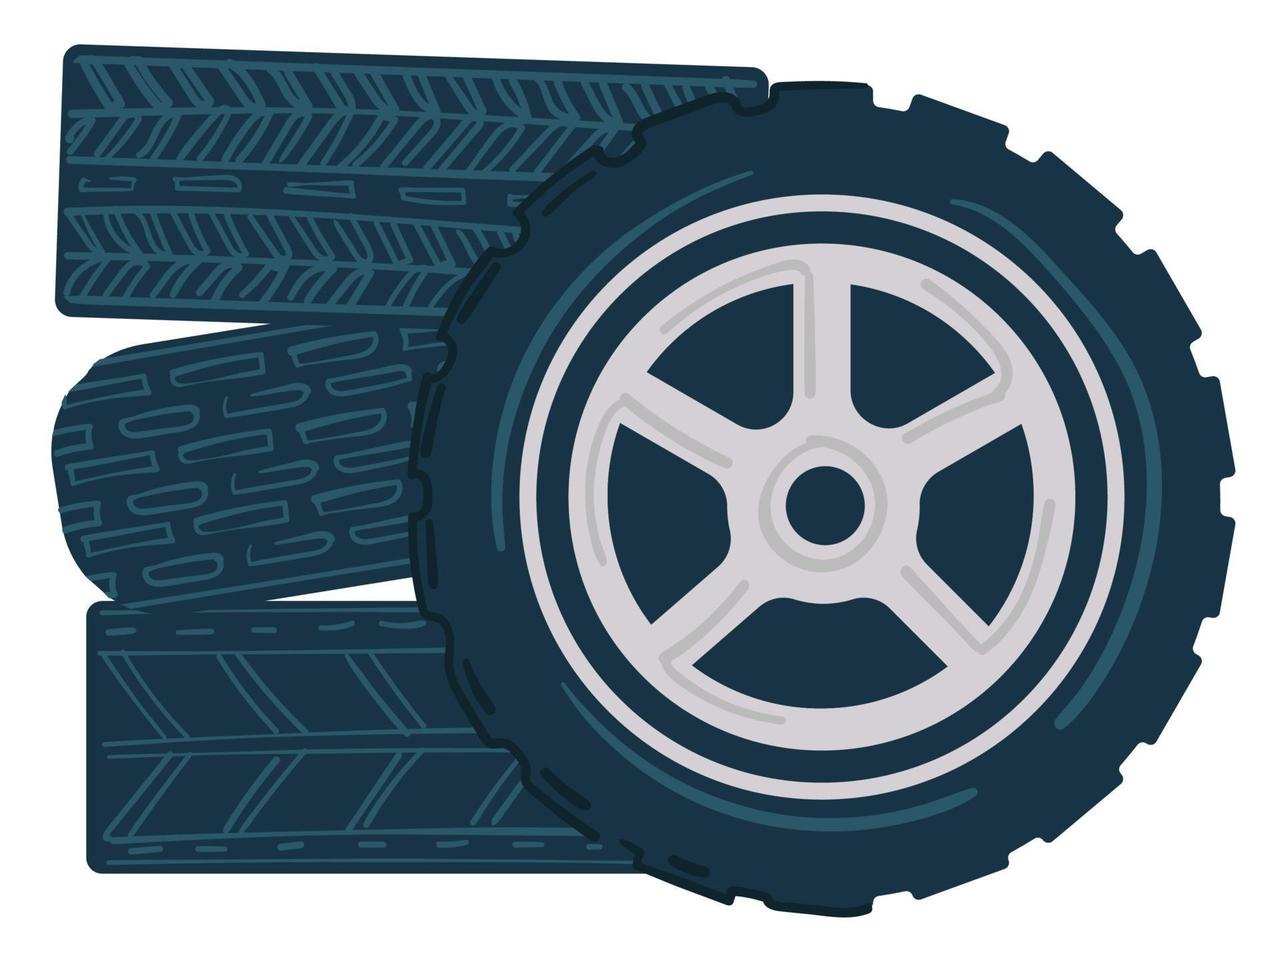 Car tyres in maintenance or automobile shop vector